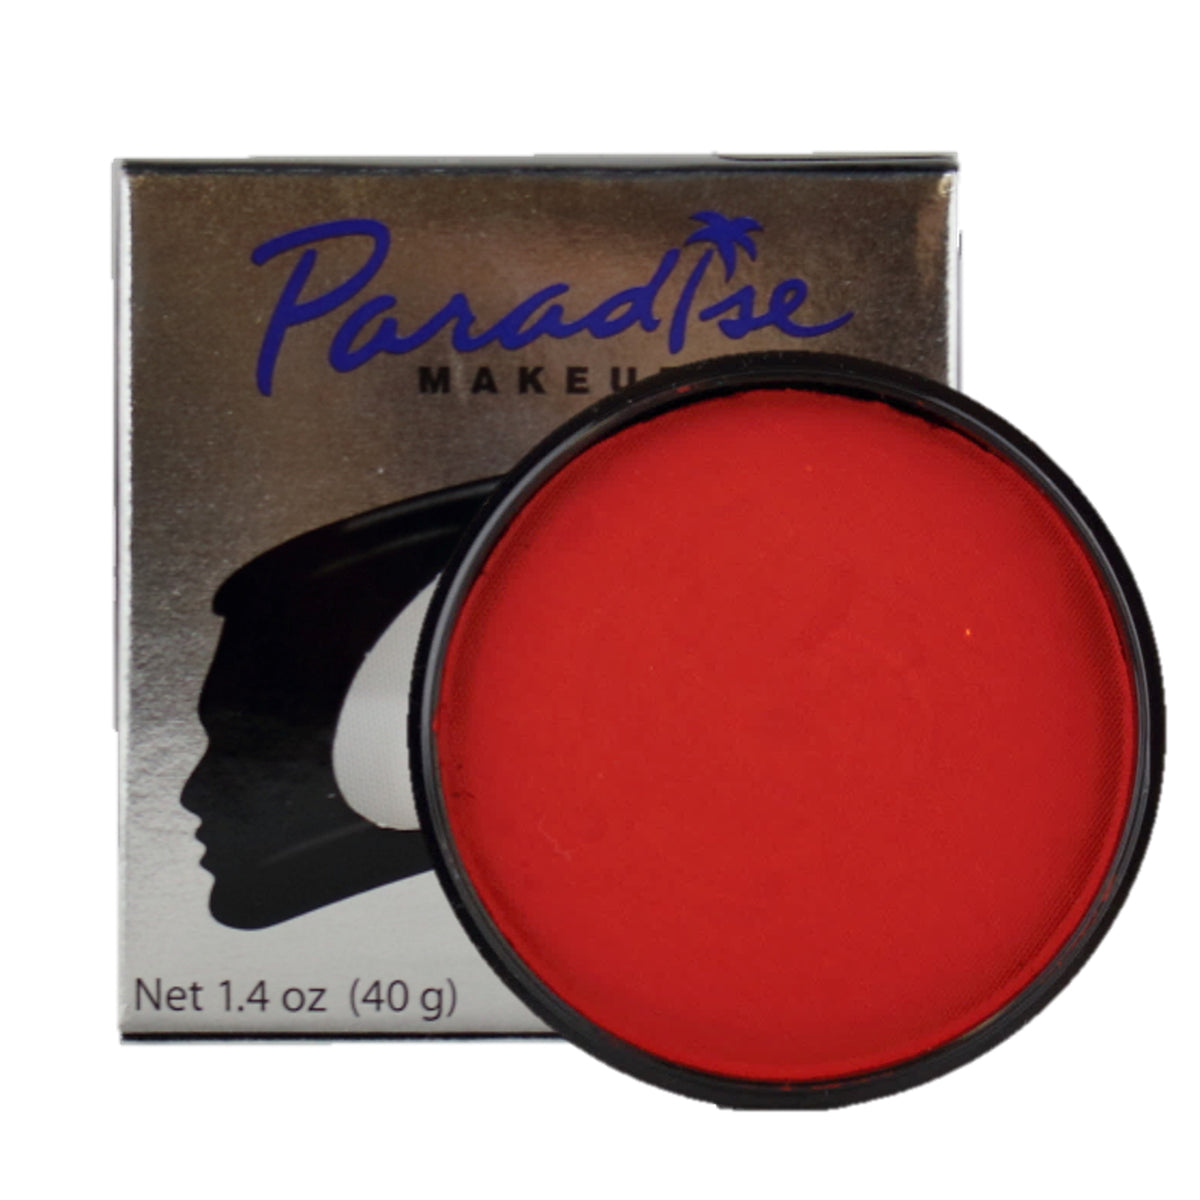 Mehron Makeup Paradise Makeup AQ Face & Body Paint 1.4 oz Red